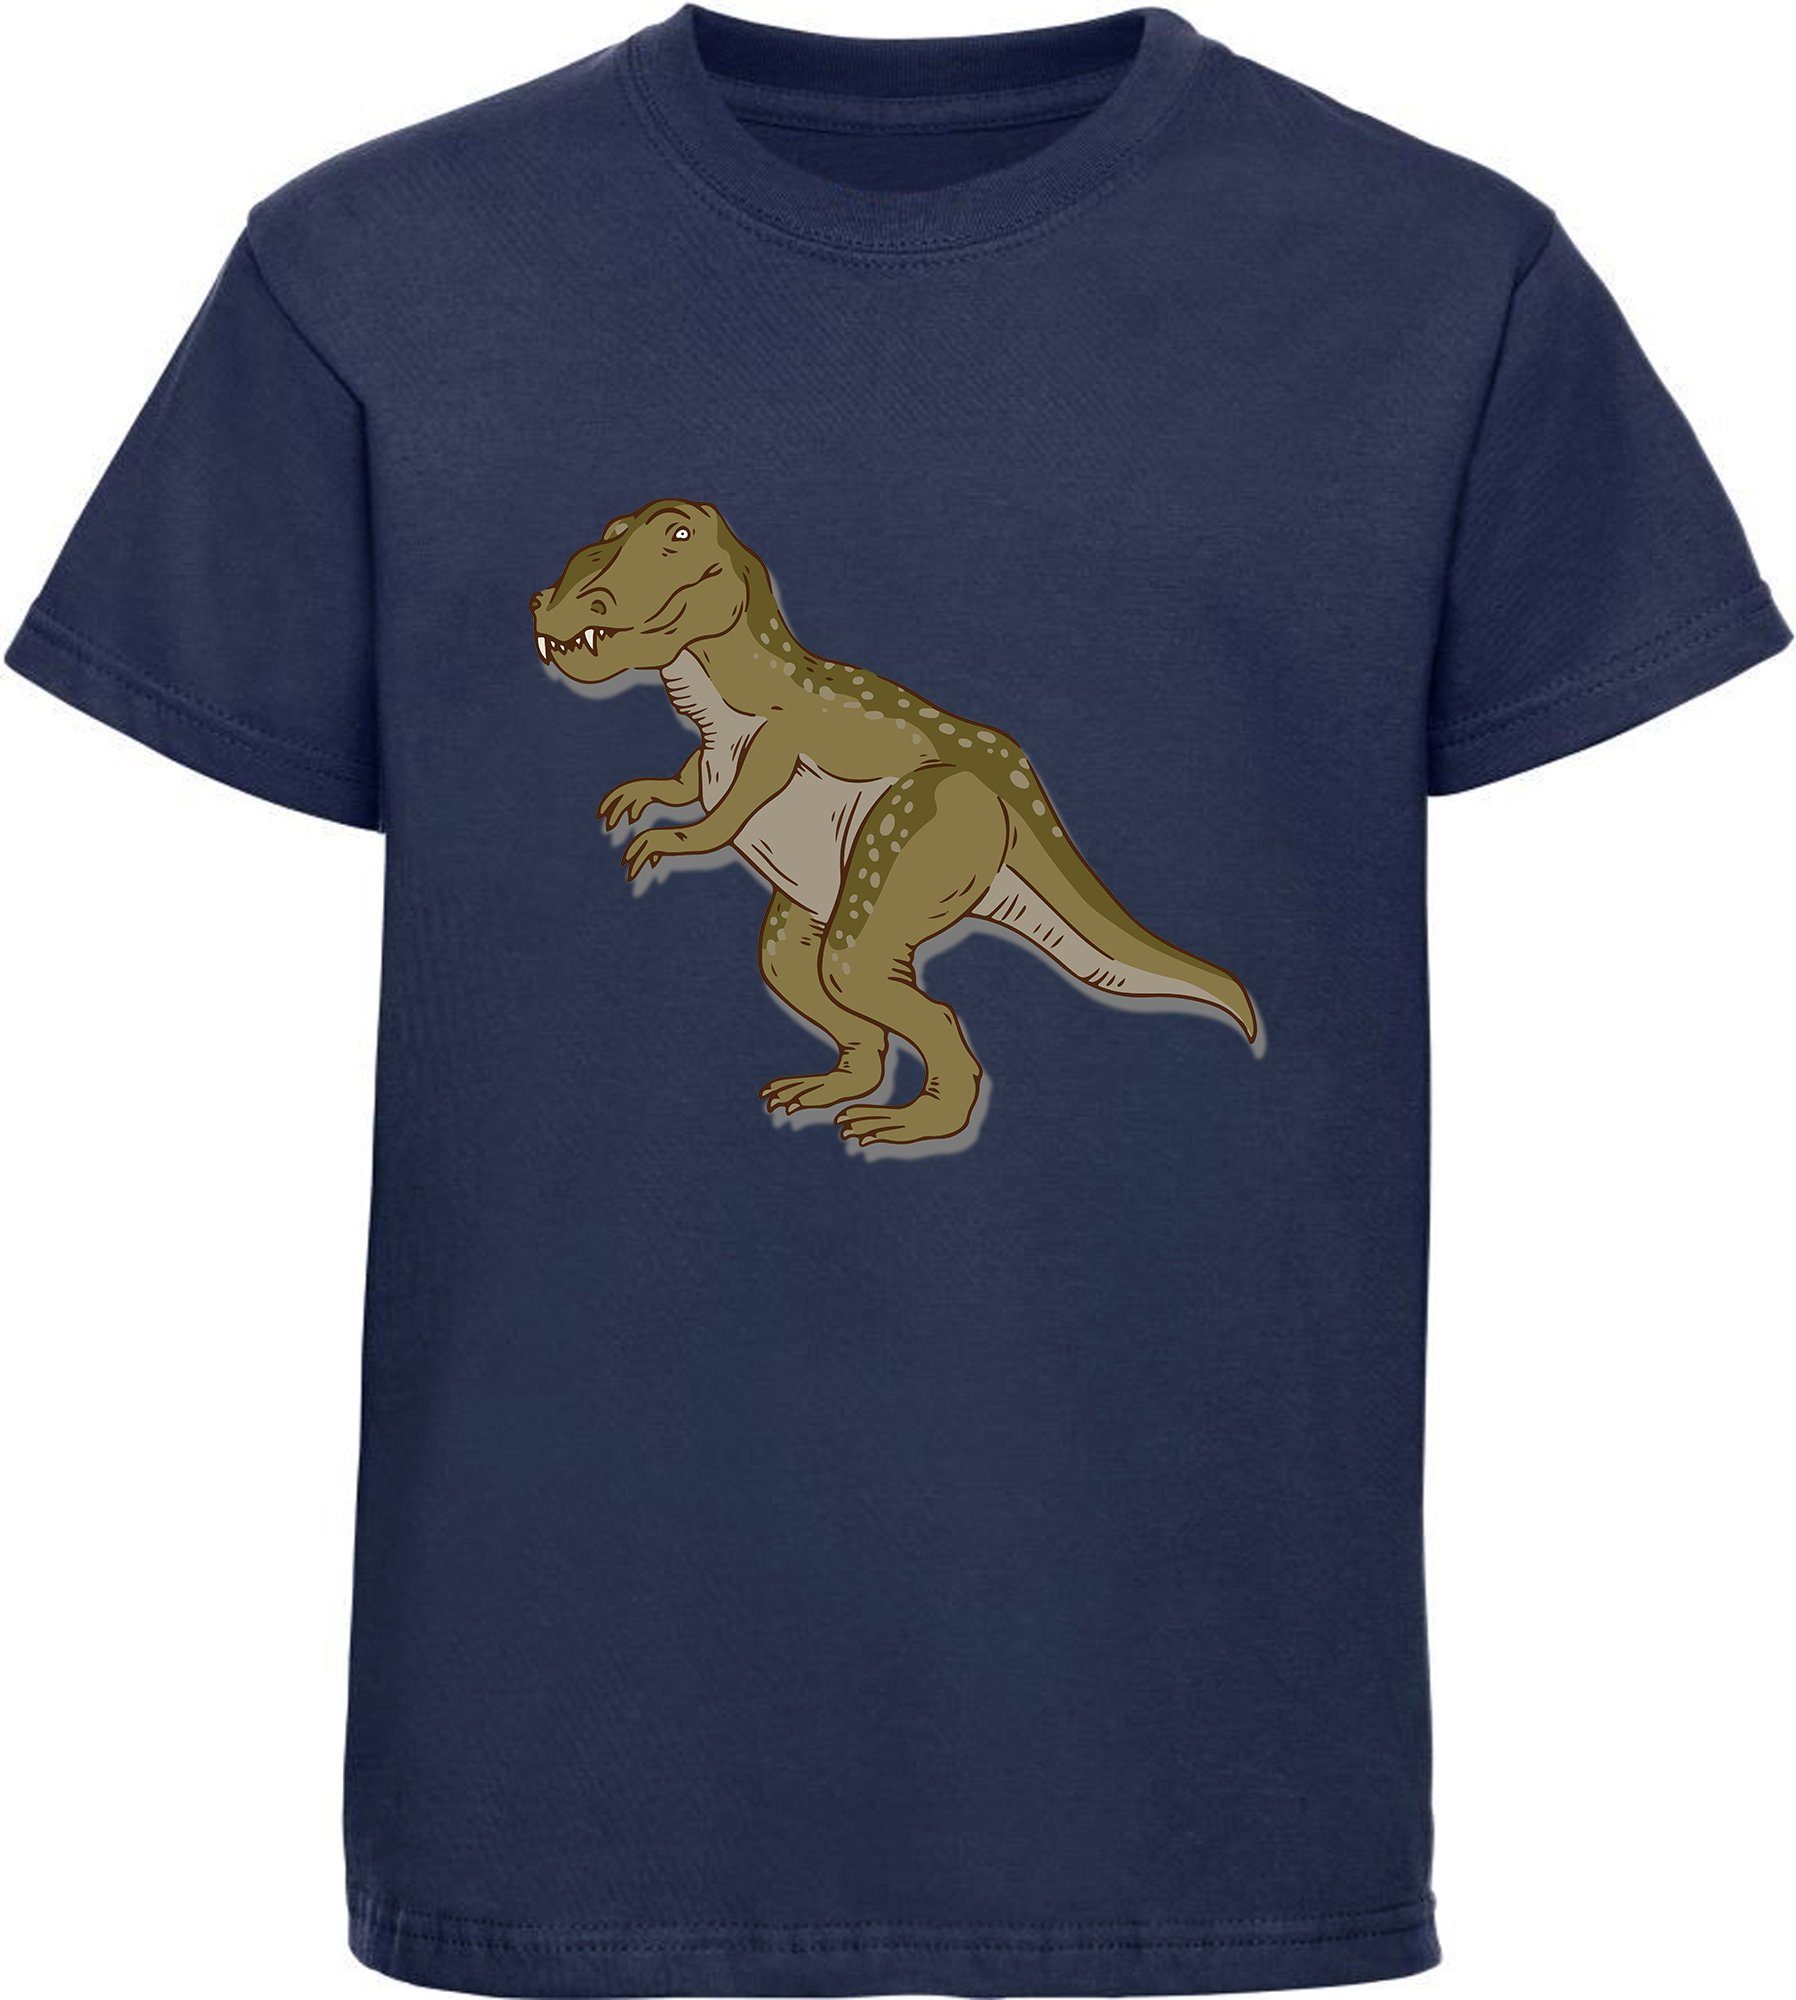 MyDesign24 Print-Shirt bedrucktes Kinder T-Shirt mit Tyrannosaurus Rex Baumwollshirt mit Dino, schwarz, weiß, rot, blau, i69 navy blau